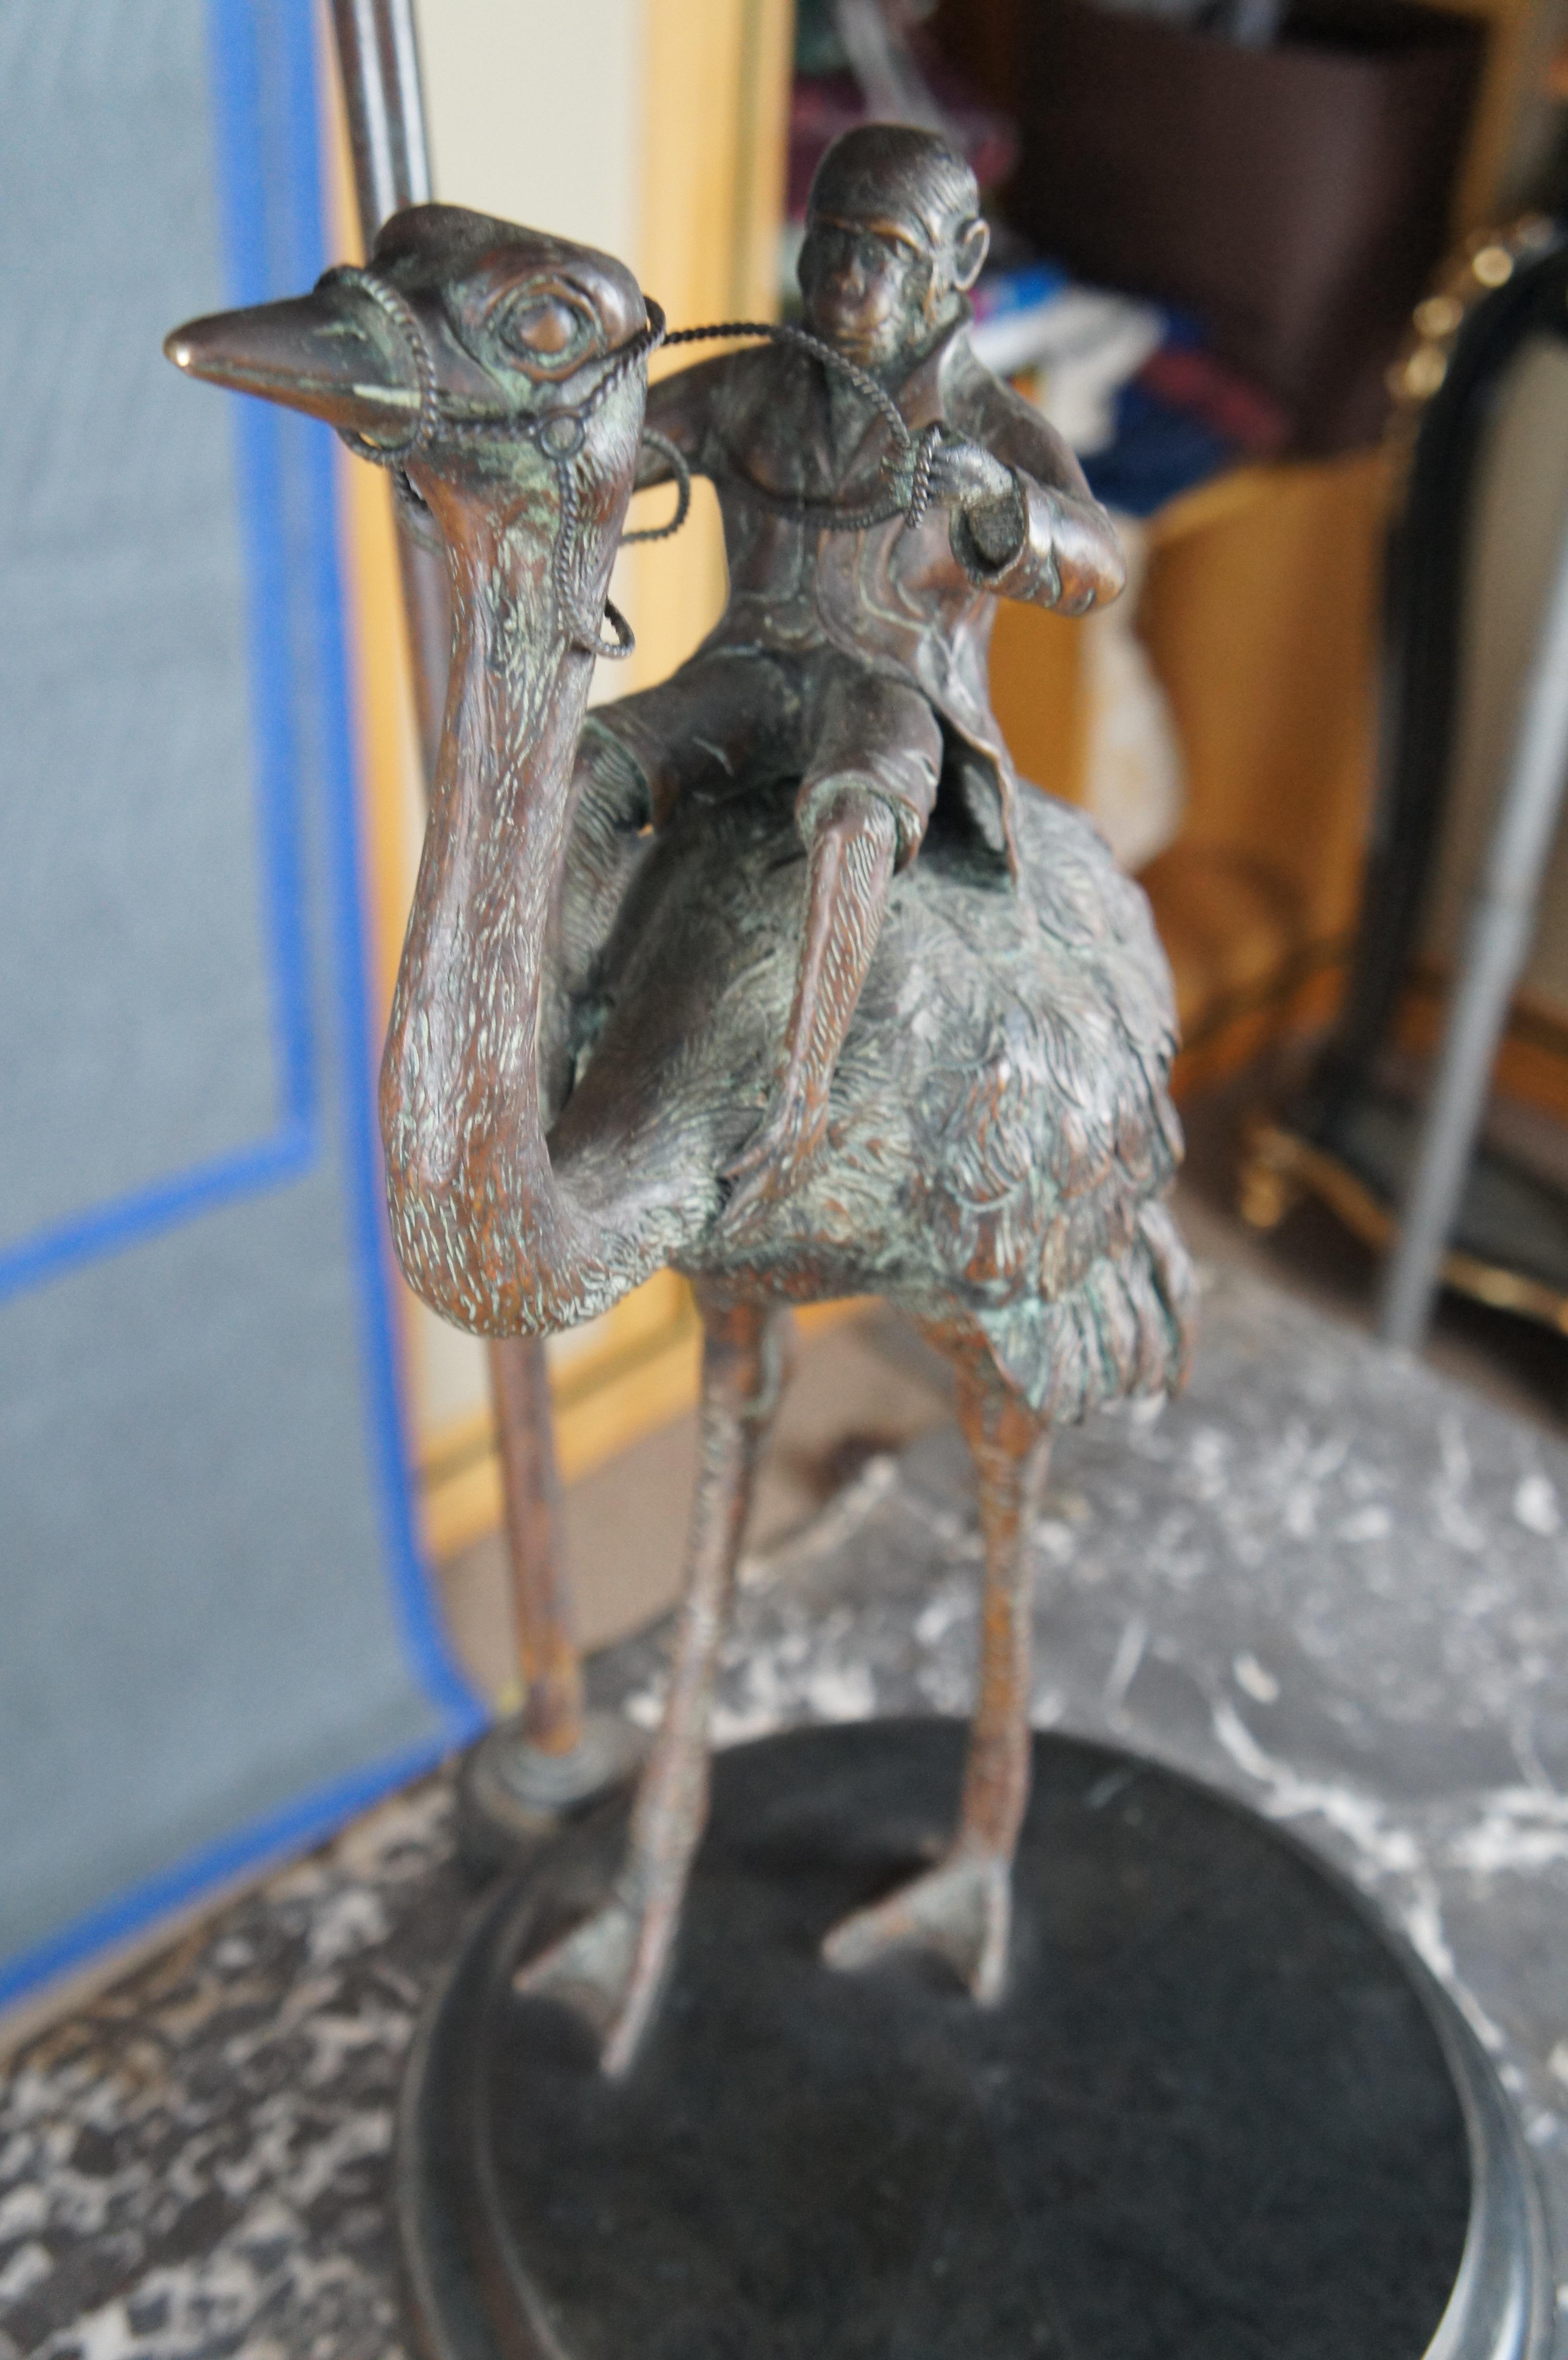 Vintage Maitland Smith Bronze Affen Reiter Strauß Tischlampe Lederschirm 39